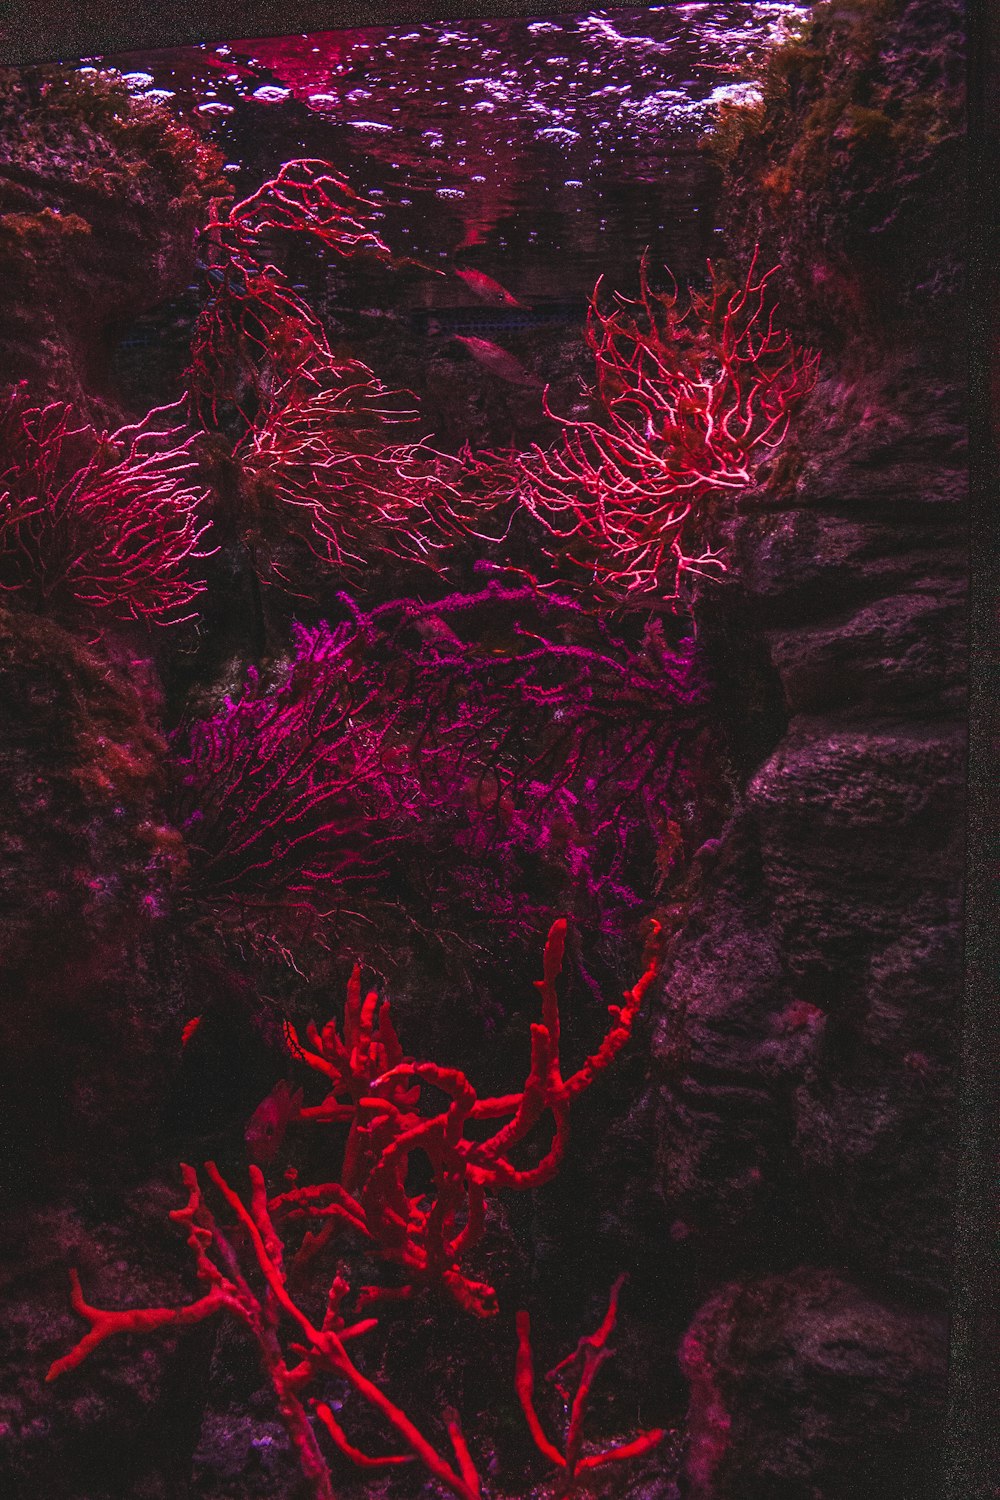 赤と黒の抽象画